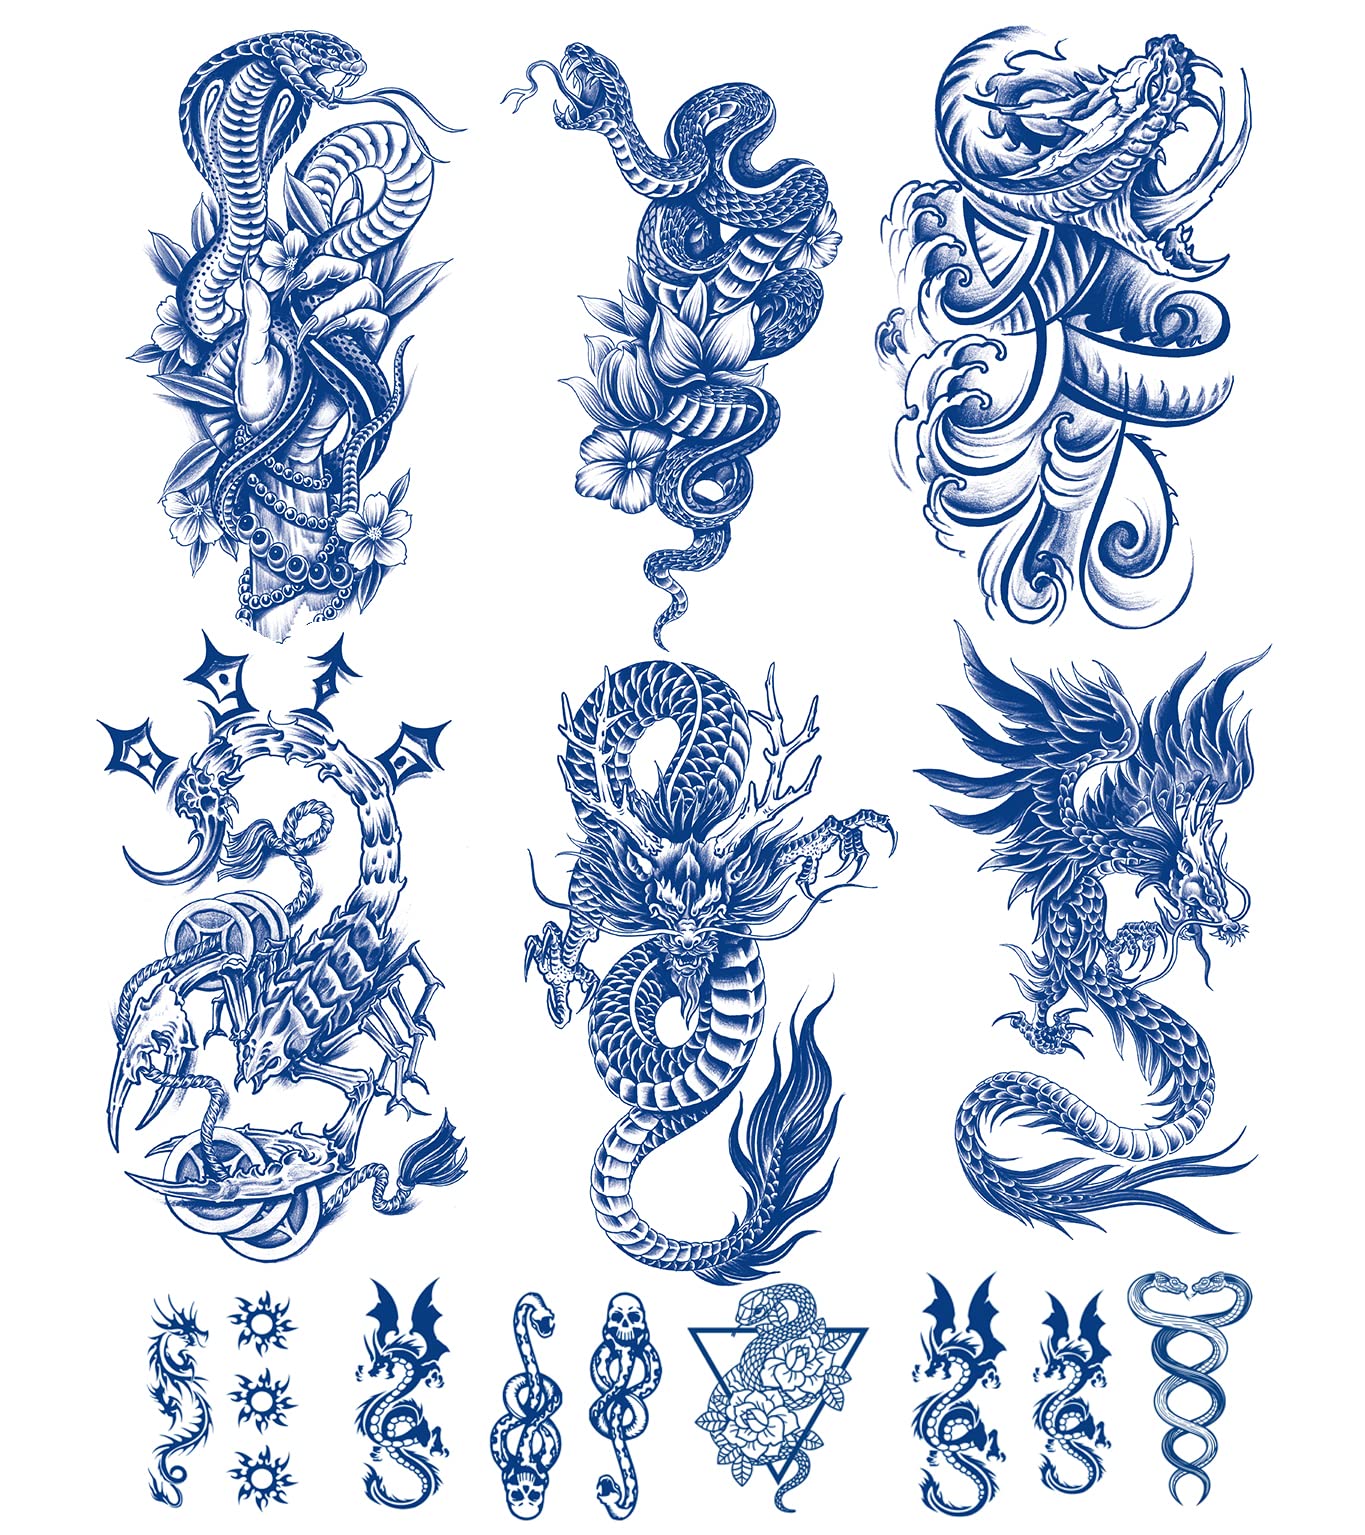 Big chino's tattoo designs | Midland TX